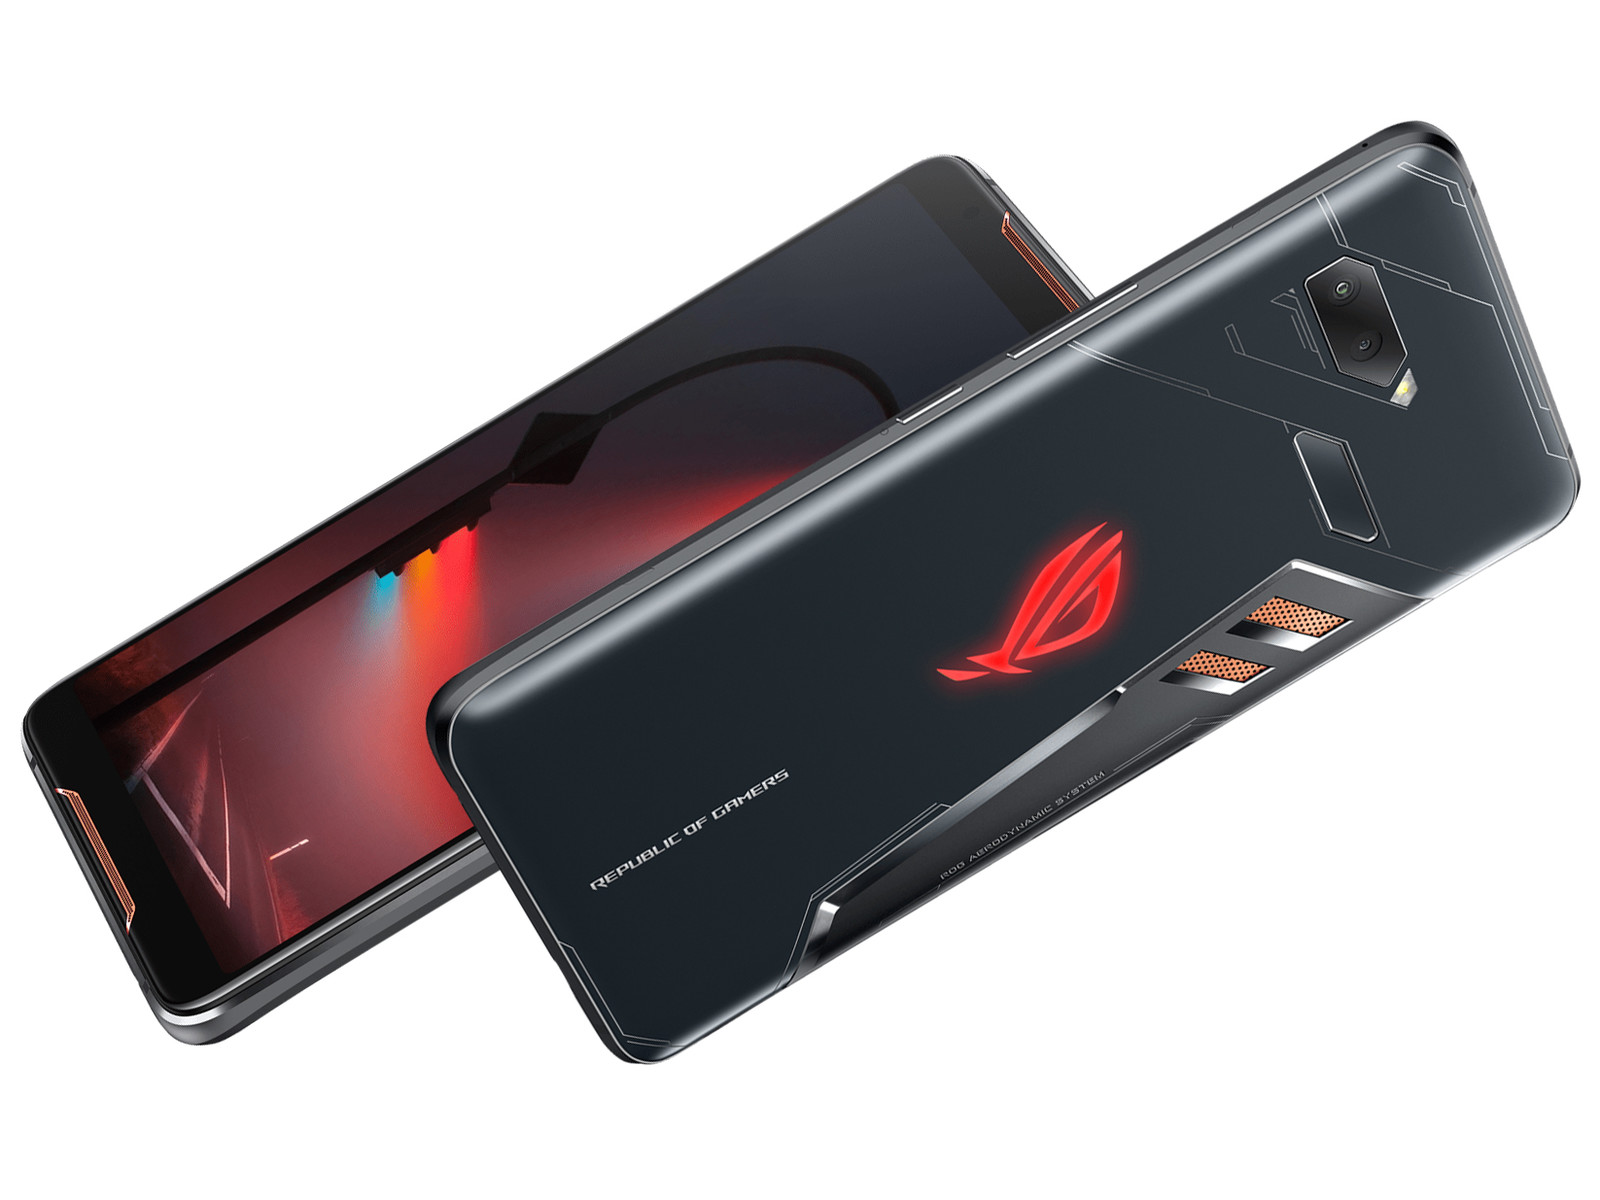 Sự ra đời của dòng sản phẩm Asus ROG Phone Series chắc chắn sẽ khiến bạn thích thú. Đây là chiếc điện thoại chơi game cao cấp nhất hiện nay, được thiết kế để tối ưu hóa trải nghiệm chơi game của người dùng. Hãy cùng ngắm nhìn hình ảnh sản phẩm để hiểu hơn về tính năng và đẳng cấp của ROG Phone Series.